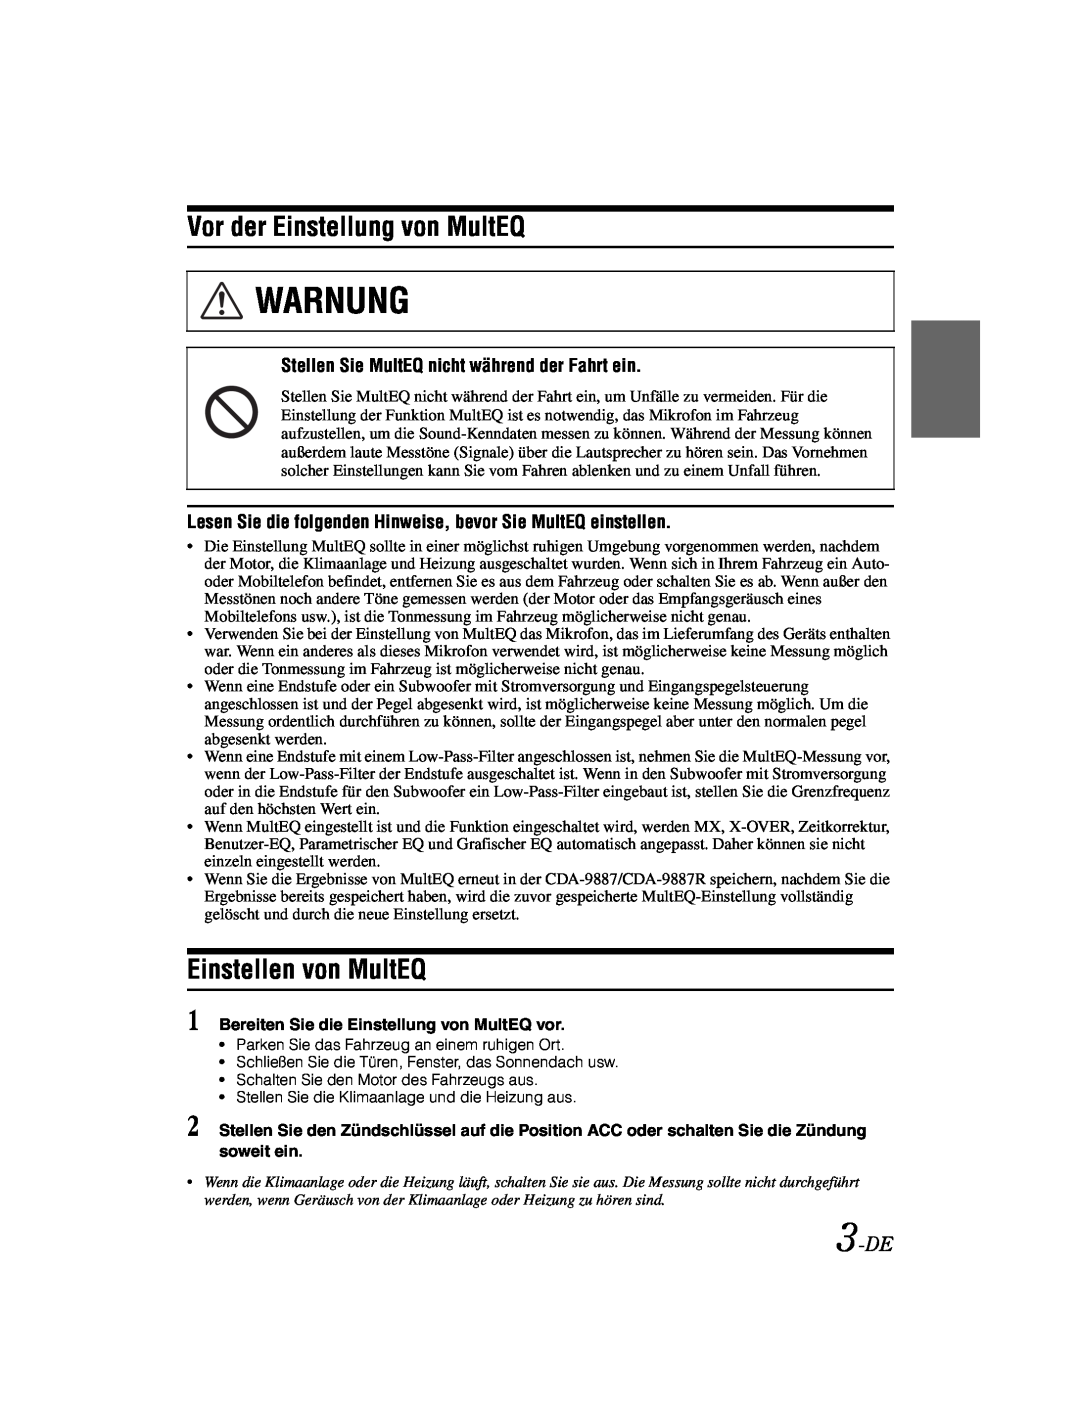 Alpine KTX-100EQ owner manual Warnung, Vor der Einstellung von MultEQ, Einstellen von MultEQ, 3-DE 